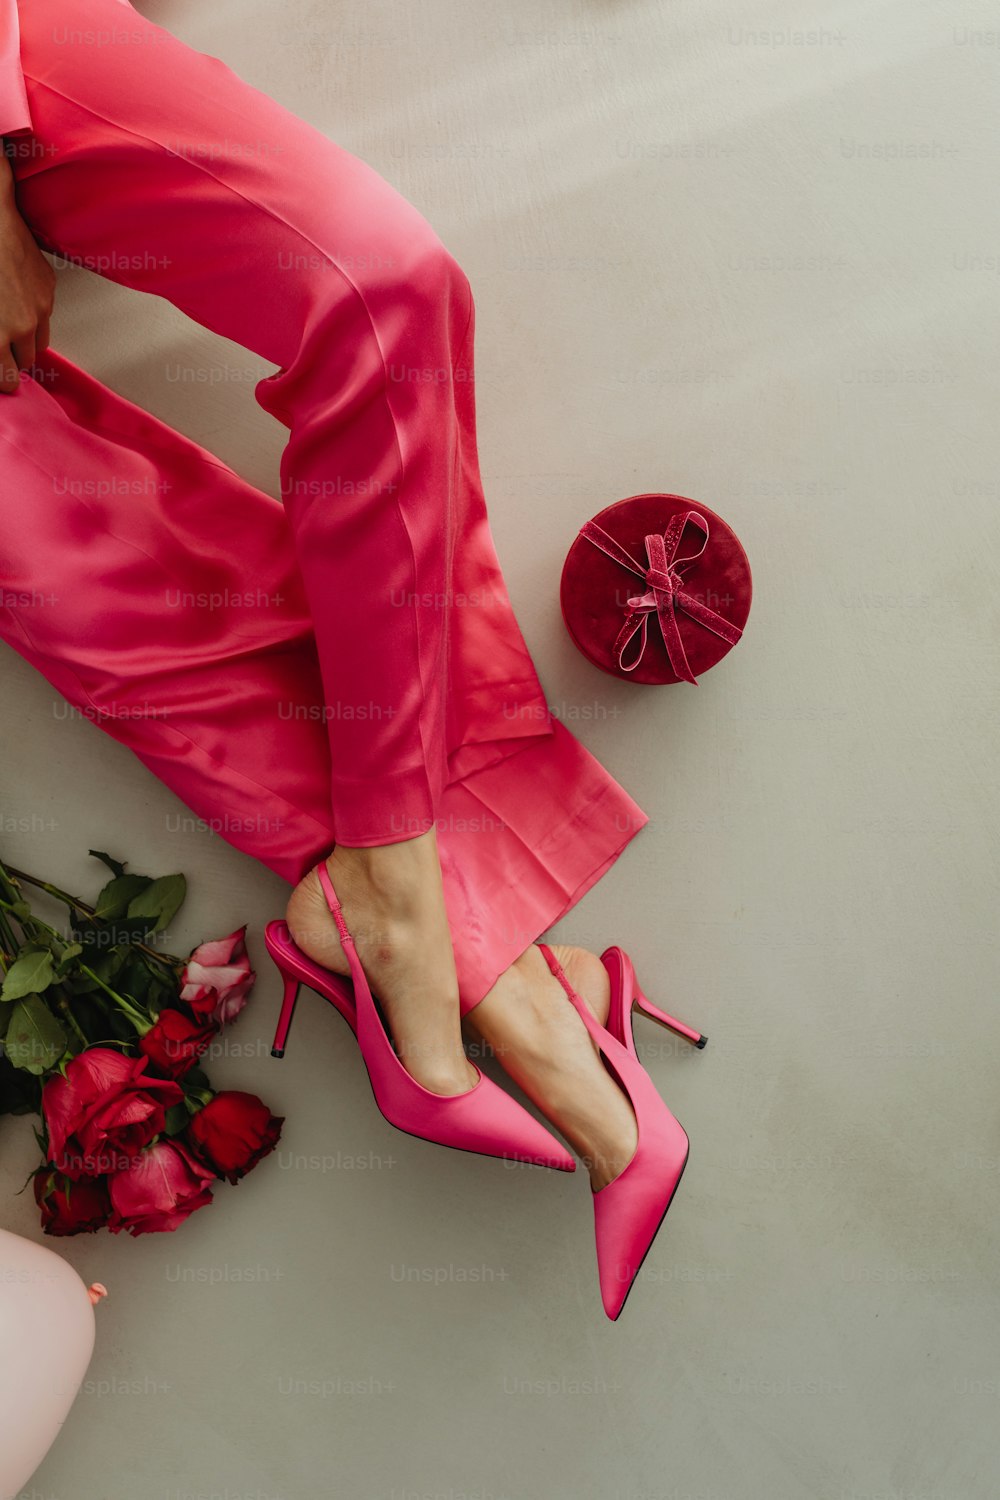 Los pies de una mujer con zapatos rosas junto a un ramo de rosas